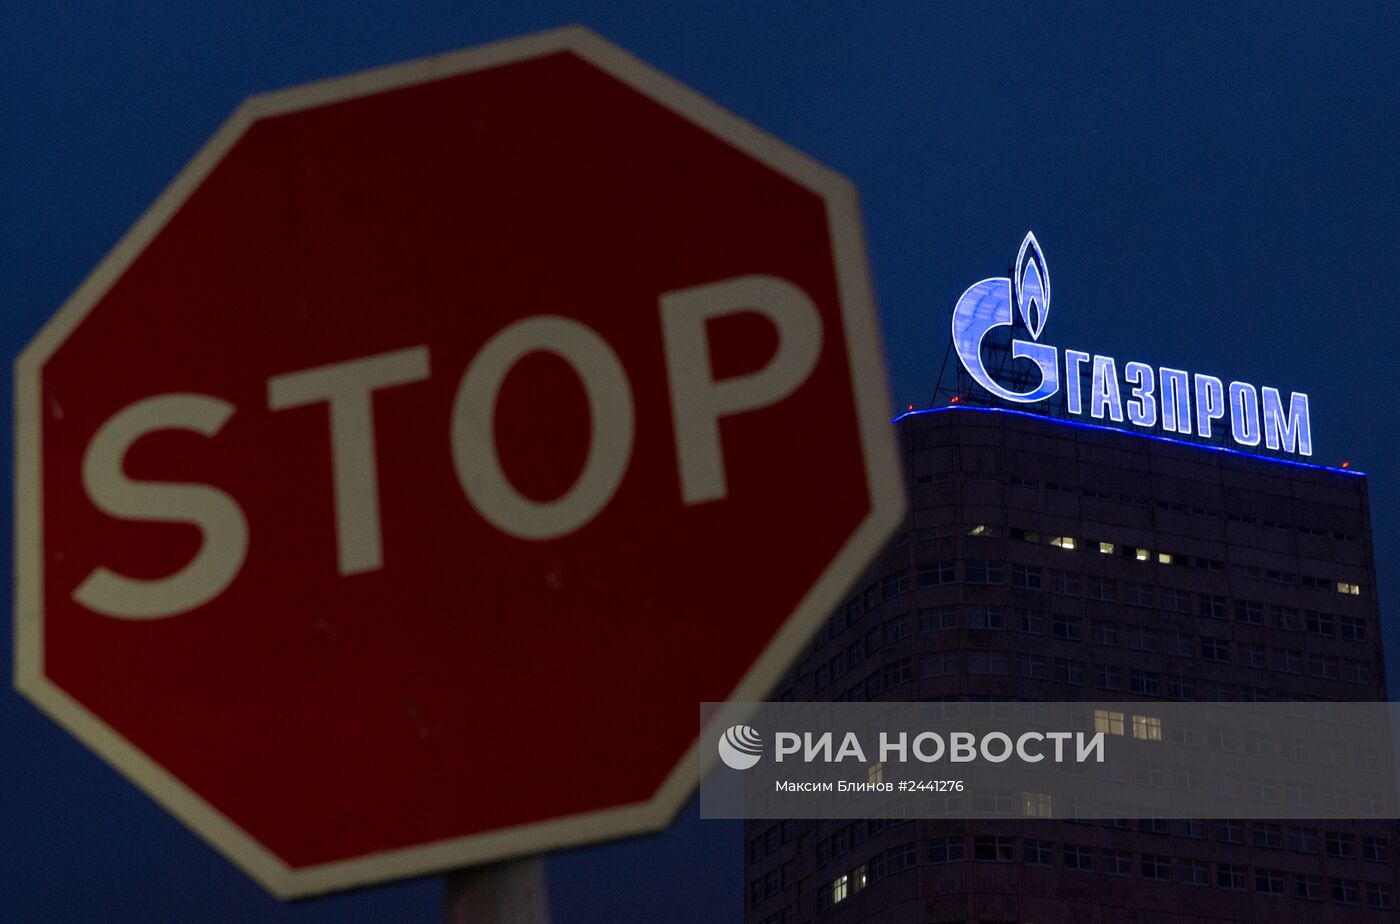 Вывеска компании "Газпром"